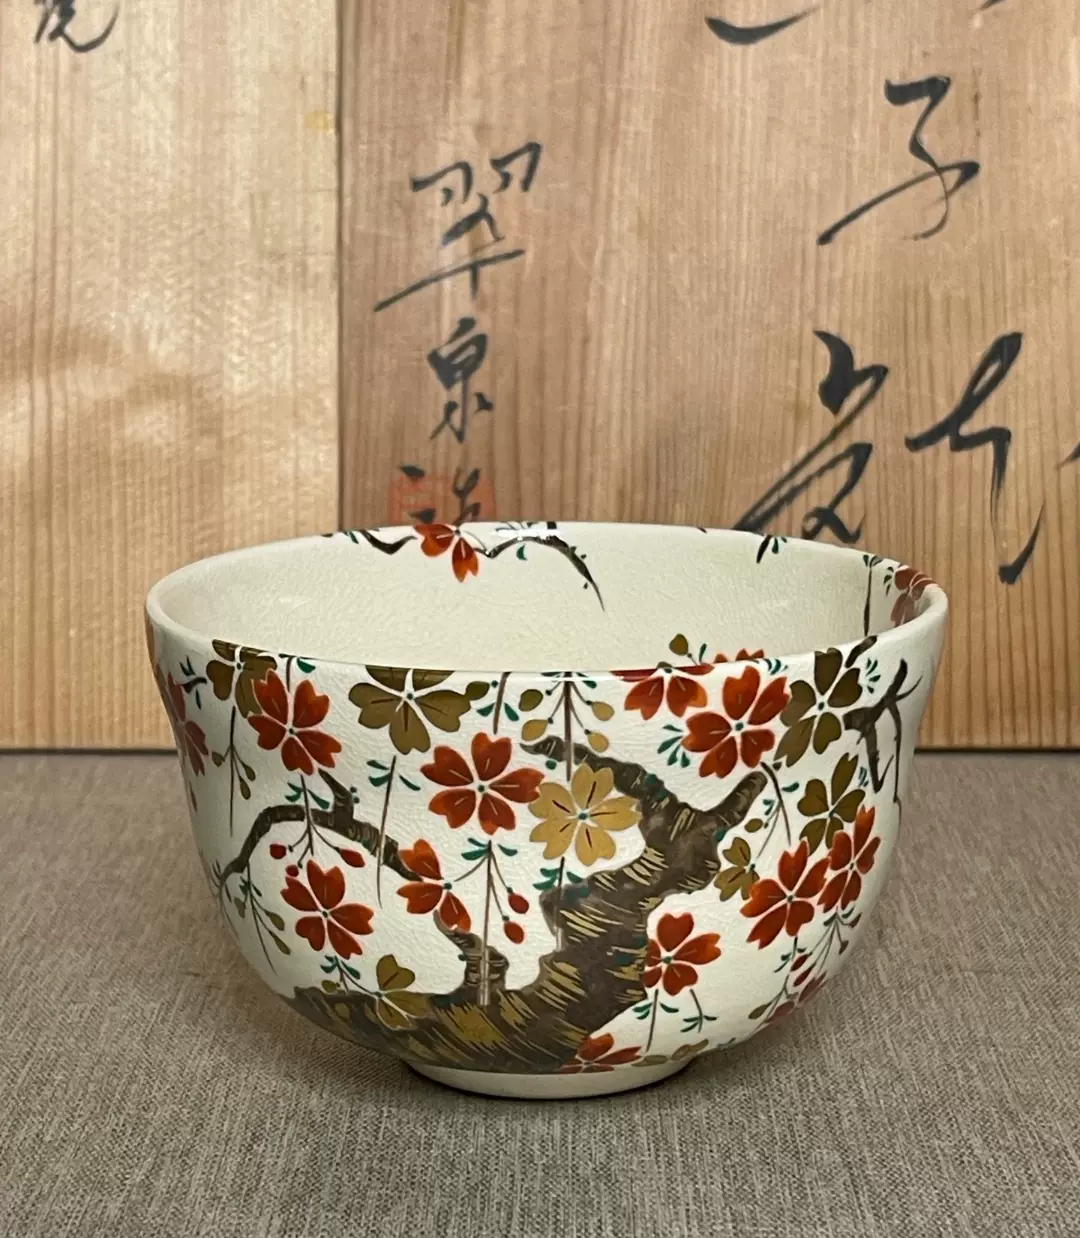 日本茶碗抹茶碗小建水内绘鎏金茶具茶道具陶瓷瓷器年代物收藏品-Taobao 